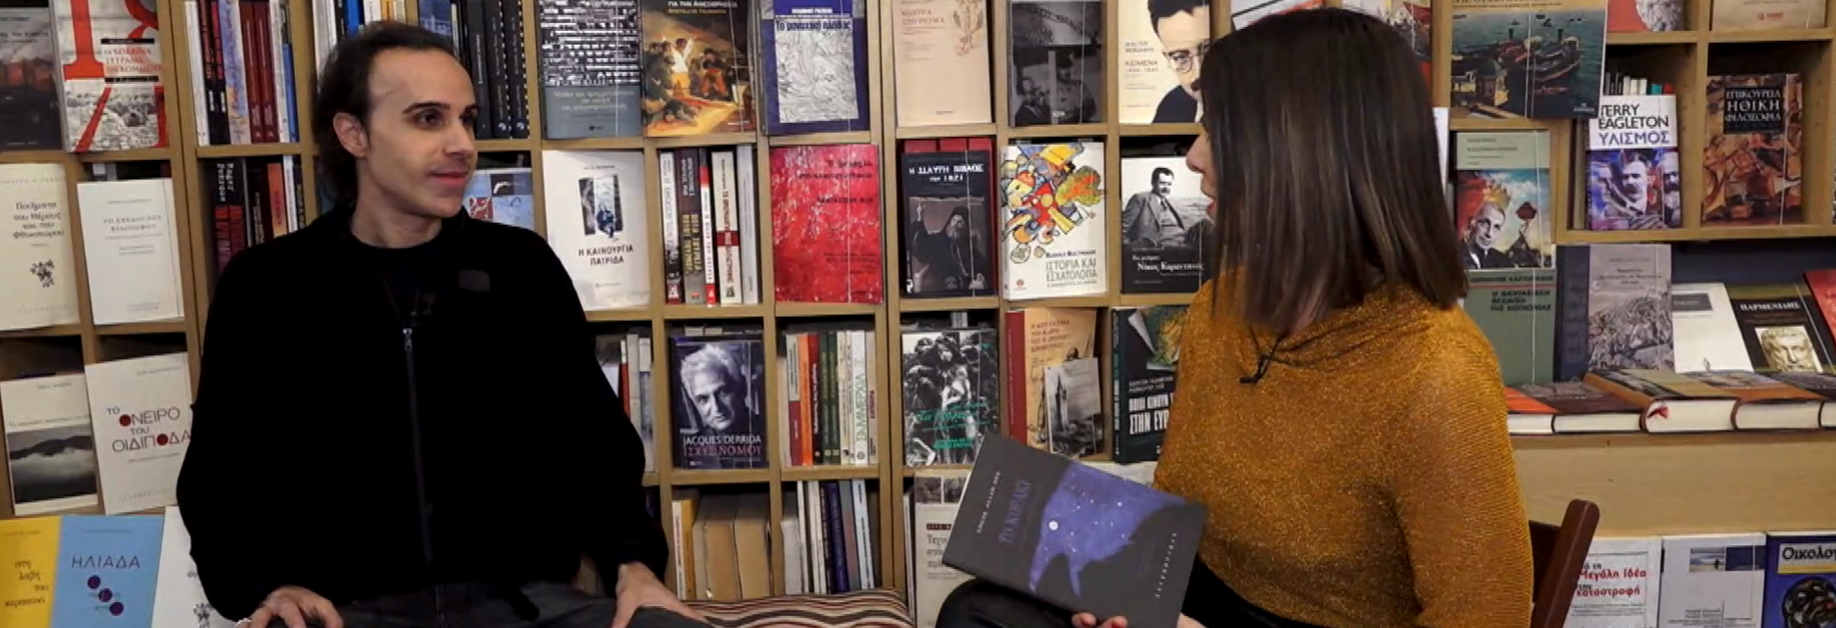 Ο Γιώργος Αλισάνογλου προτείνει βιβλία ποίησης για τις διακοπές των Χριστουγέννων